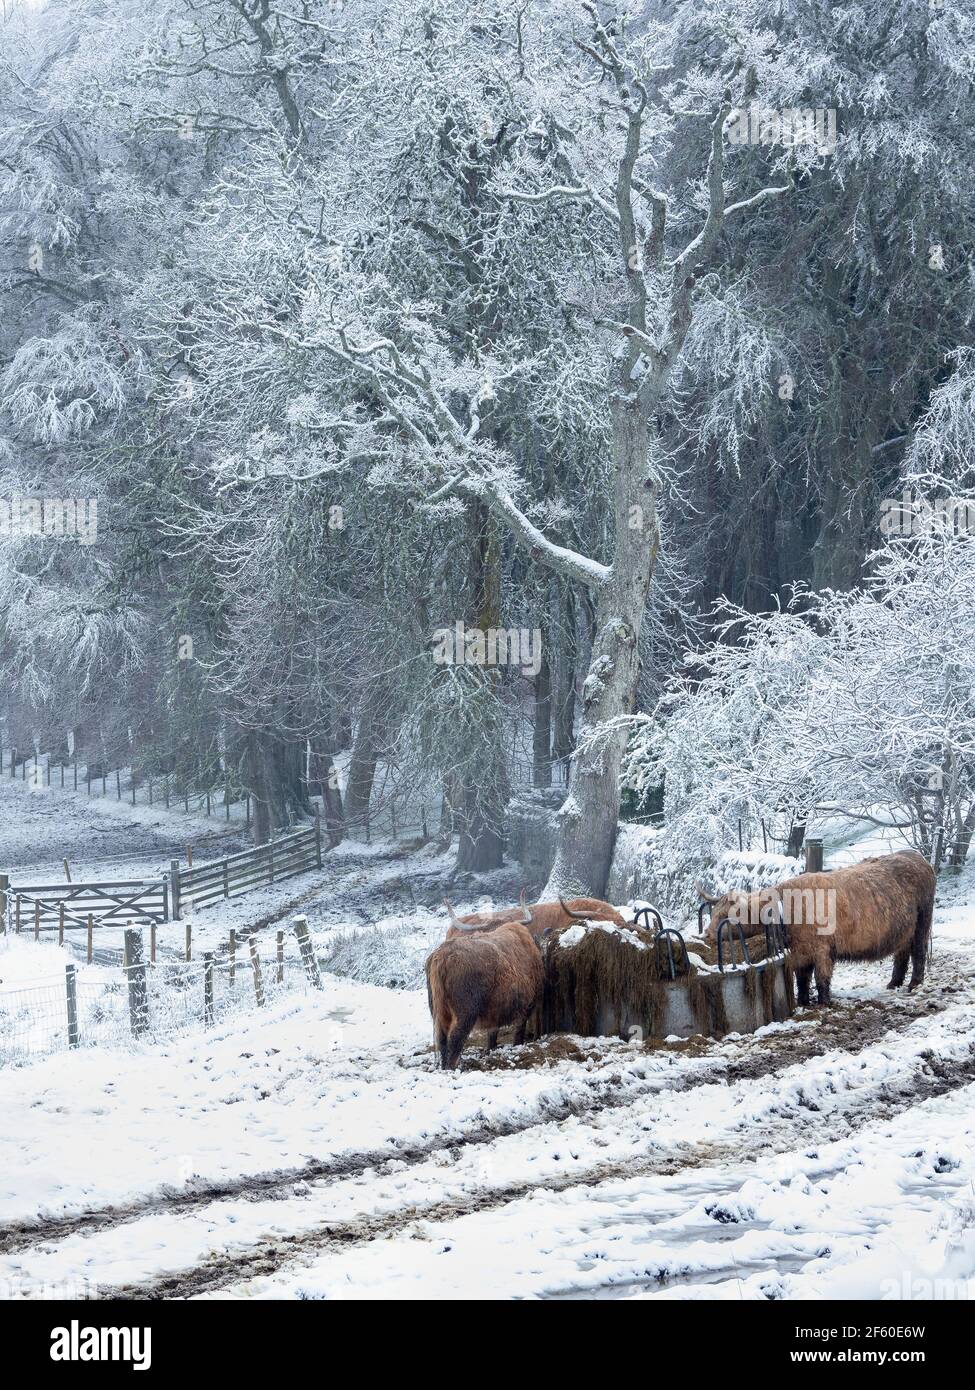 Des vaches des Highlands dans une station d'alimentation avec des arbres couverts de neige et le sol. Banque D'Images